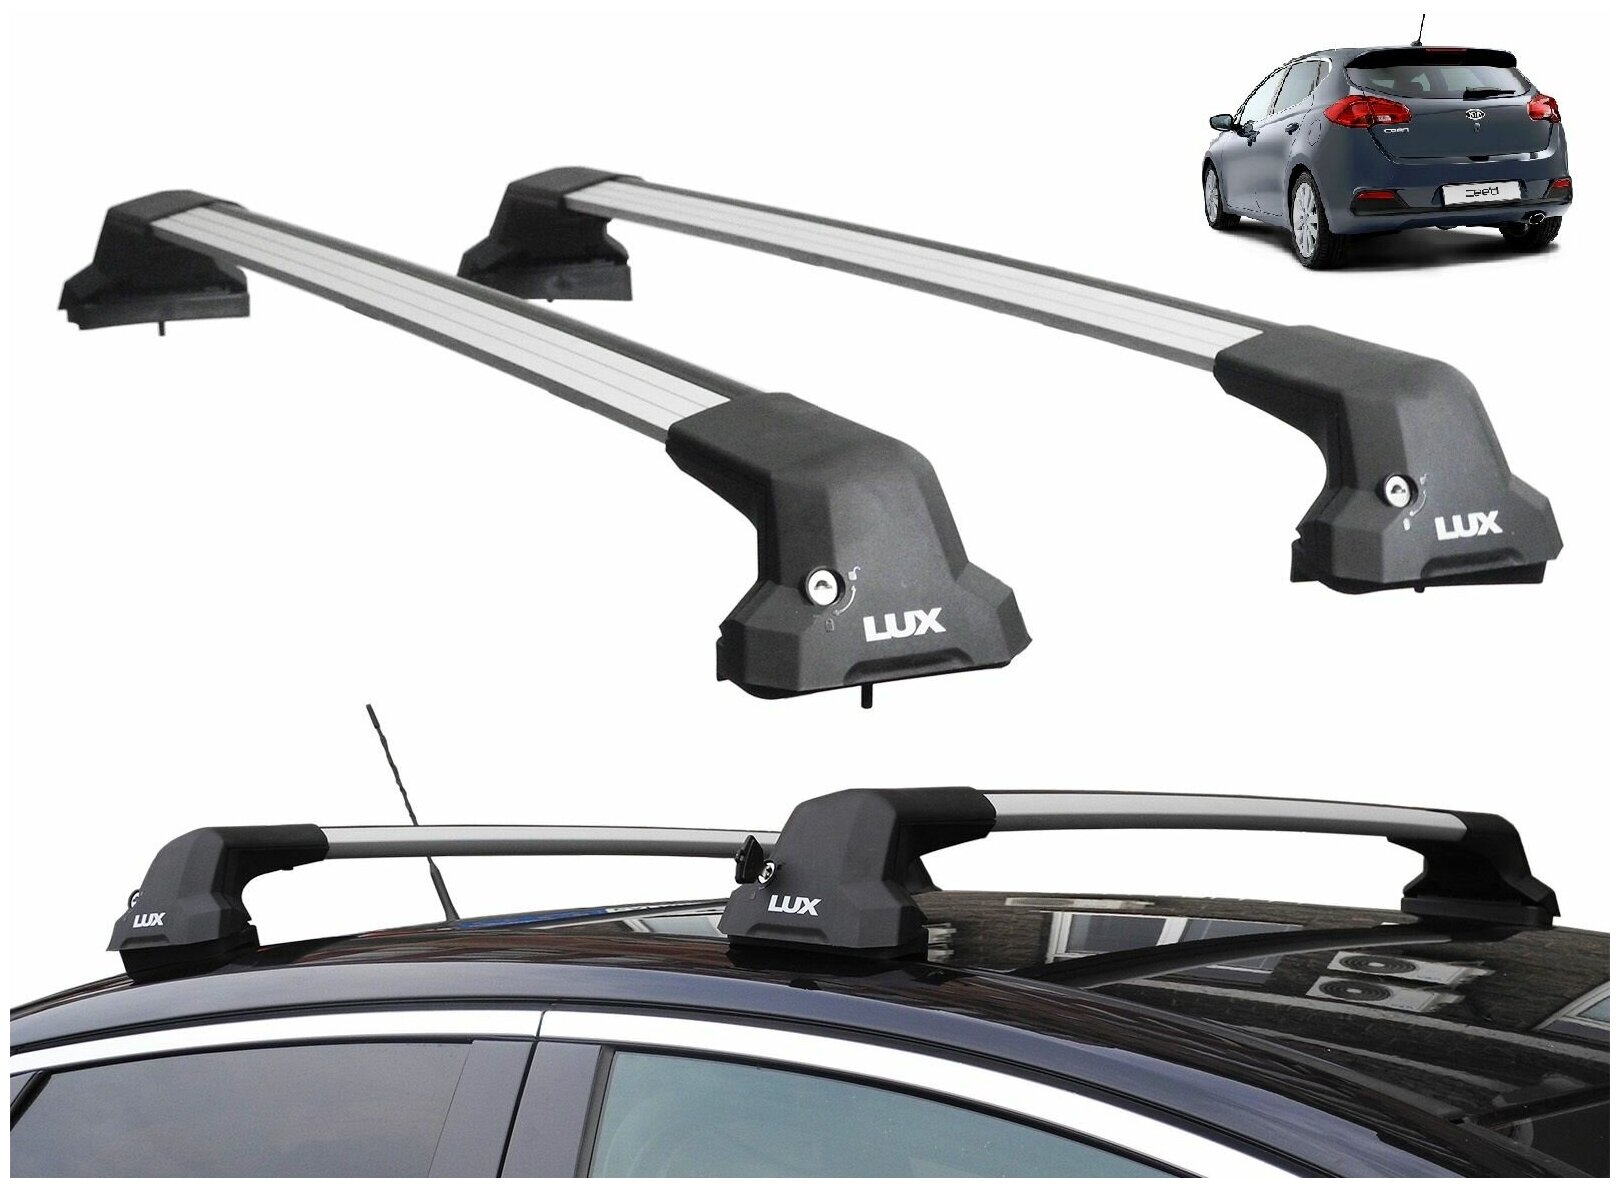 Багажник на крышу Киа Сид, хэтчбек, 2012-2018 (Kia Ceed, hatchback, 2012-2018), Lux City, серебристые дуги